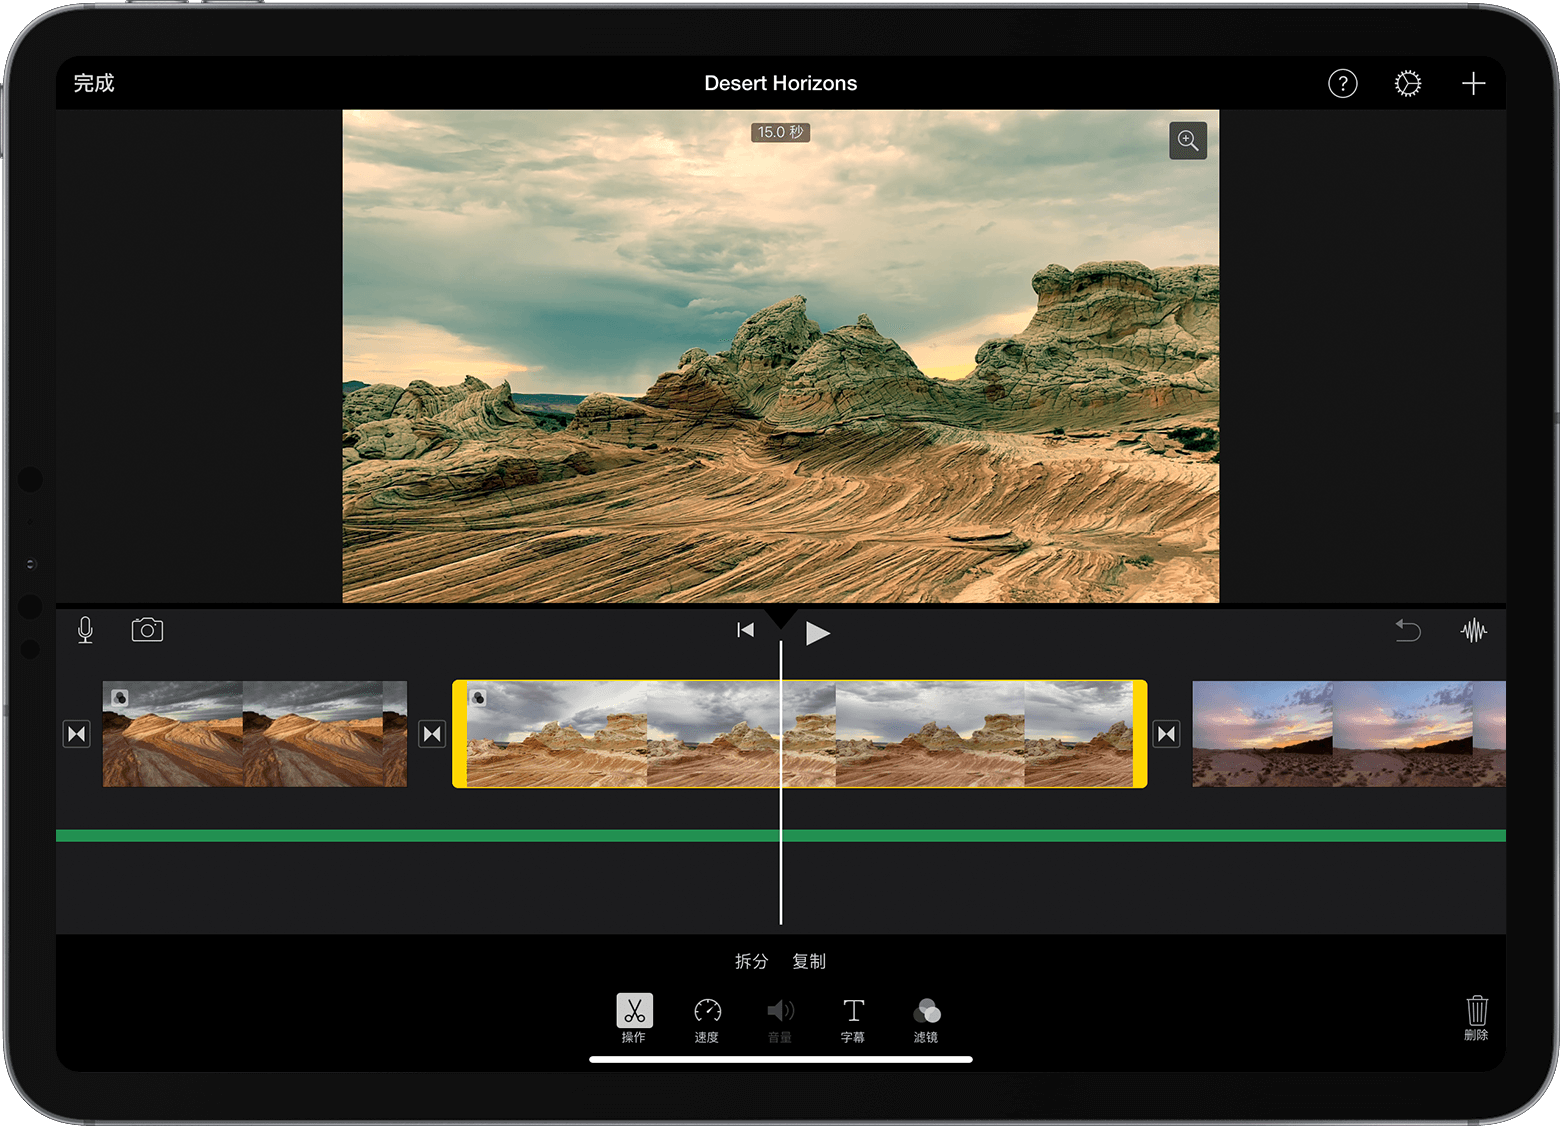 iPad 版 iMovie 剪辑中打开了一个项目，而且时间线中已选择一个视频片段